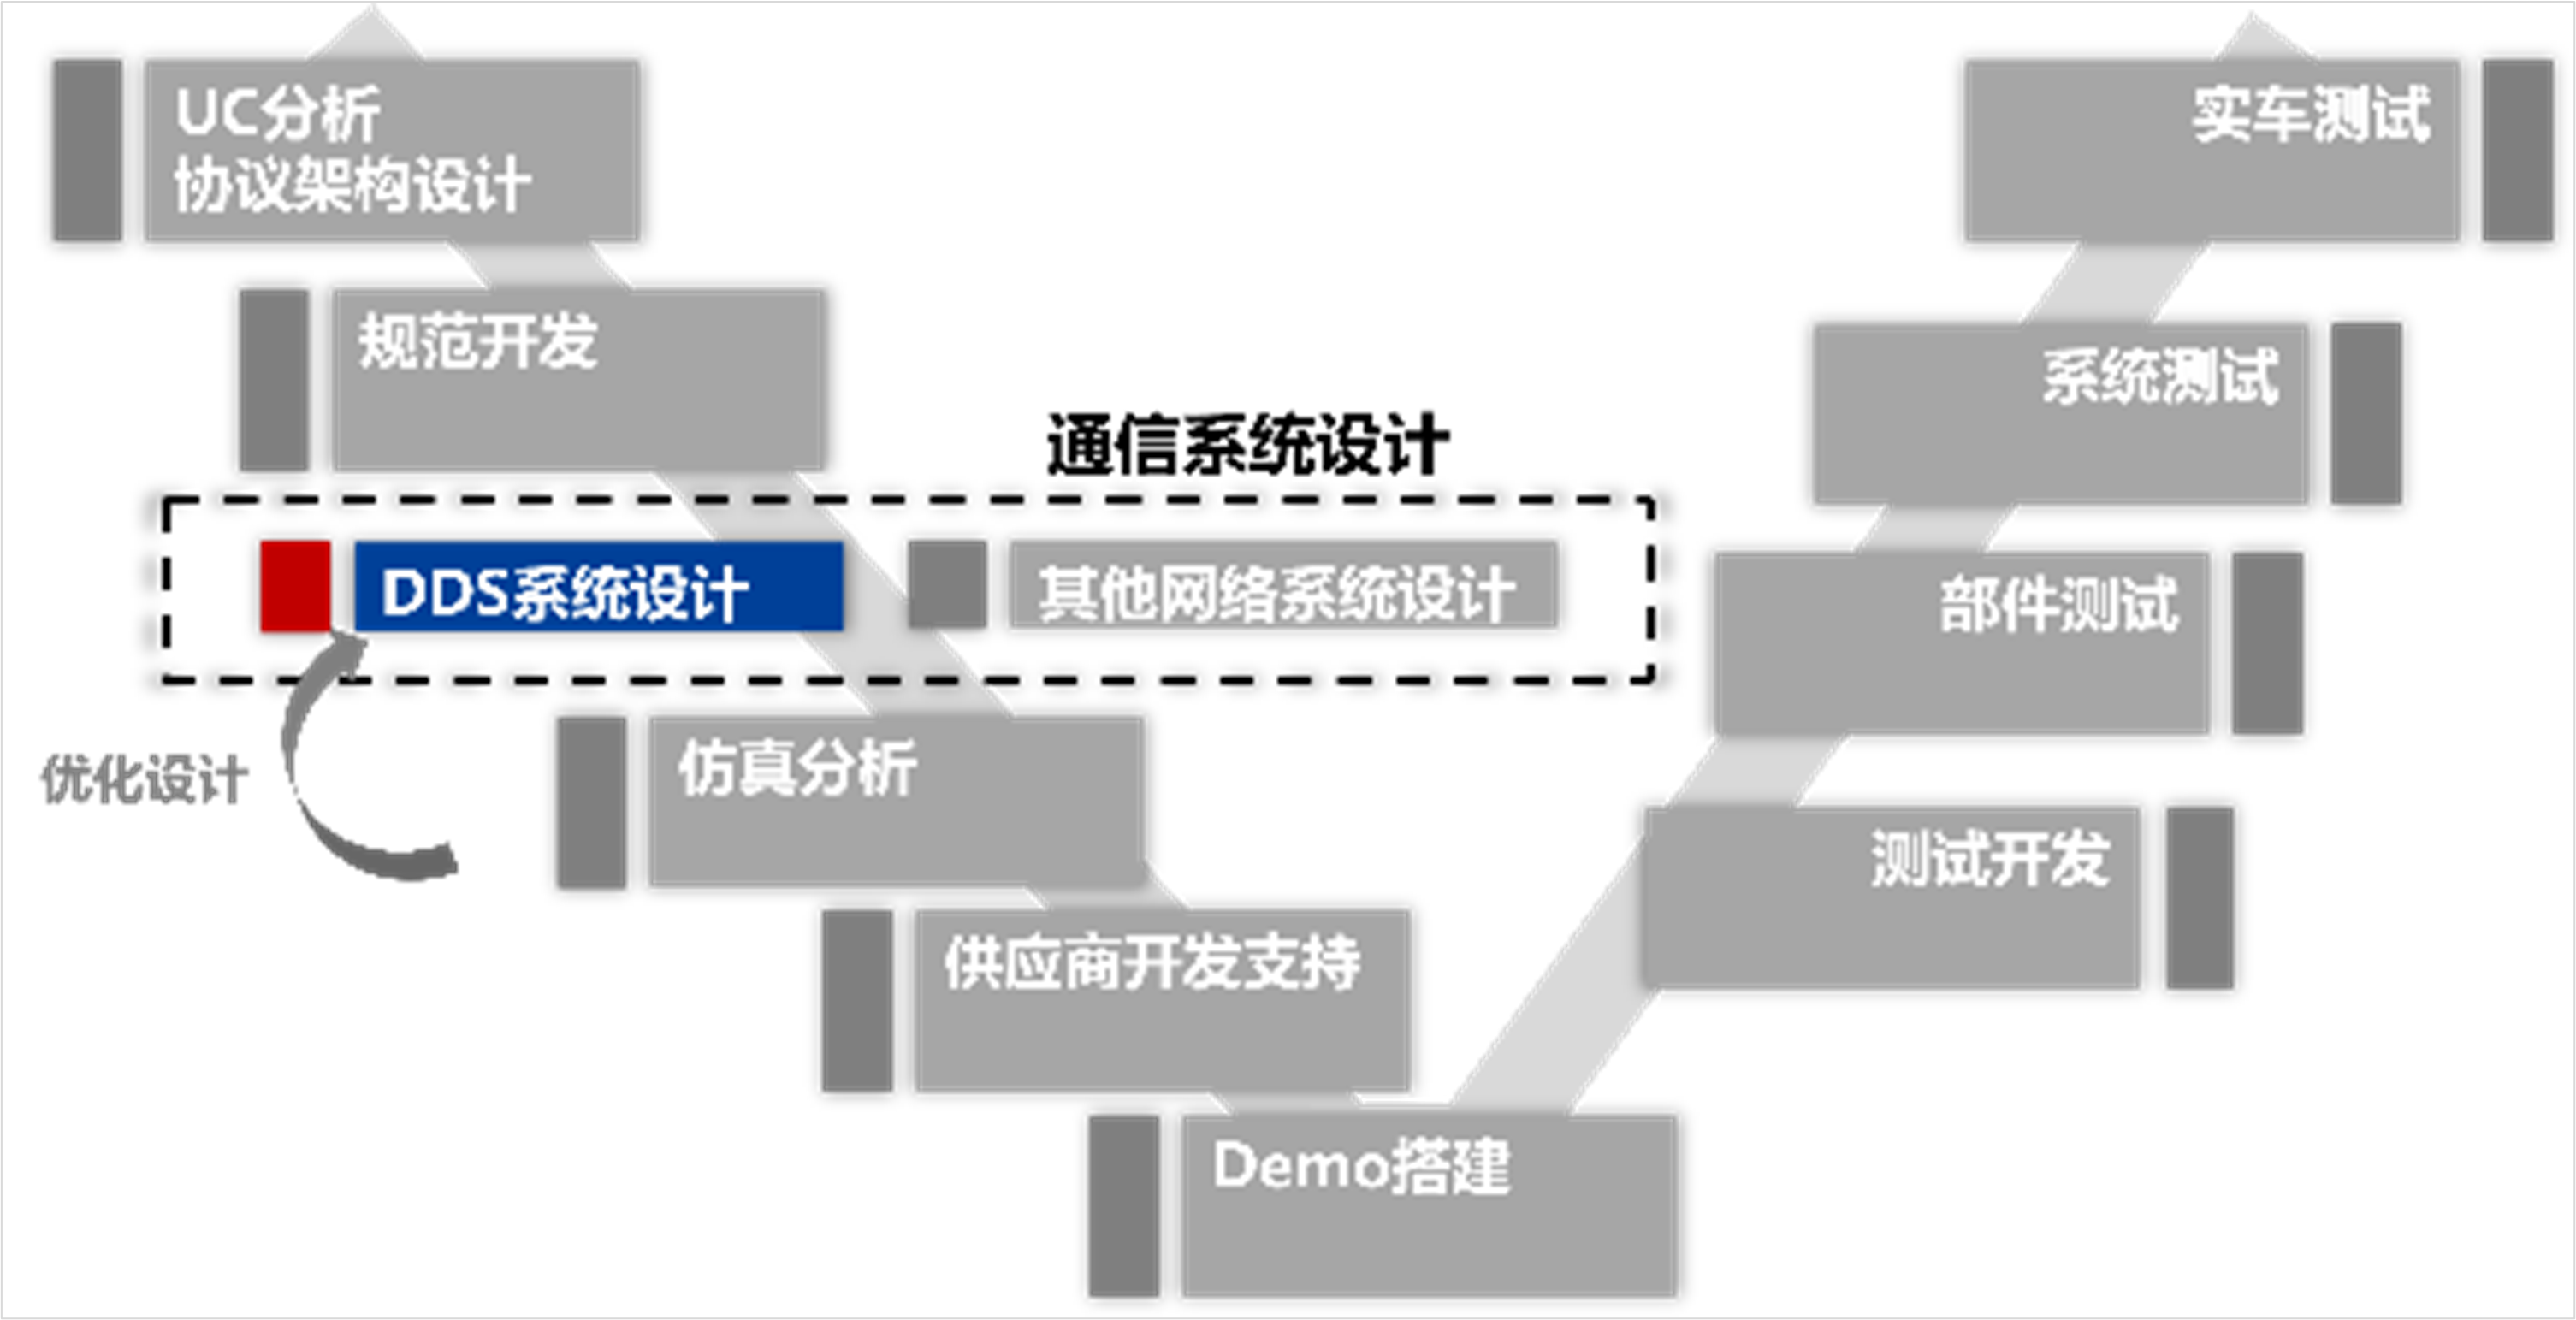 图2 DDS系统设计在整车EE架构开发流程中的位置